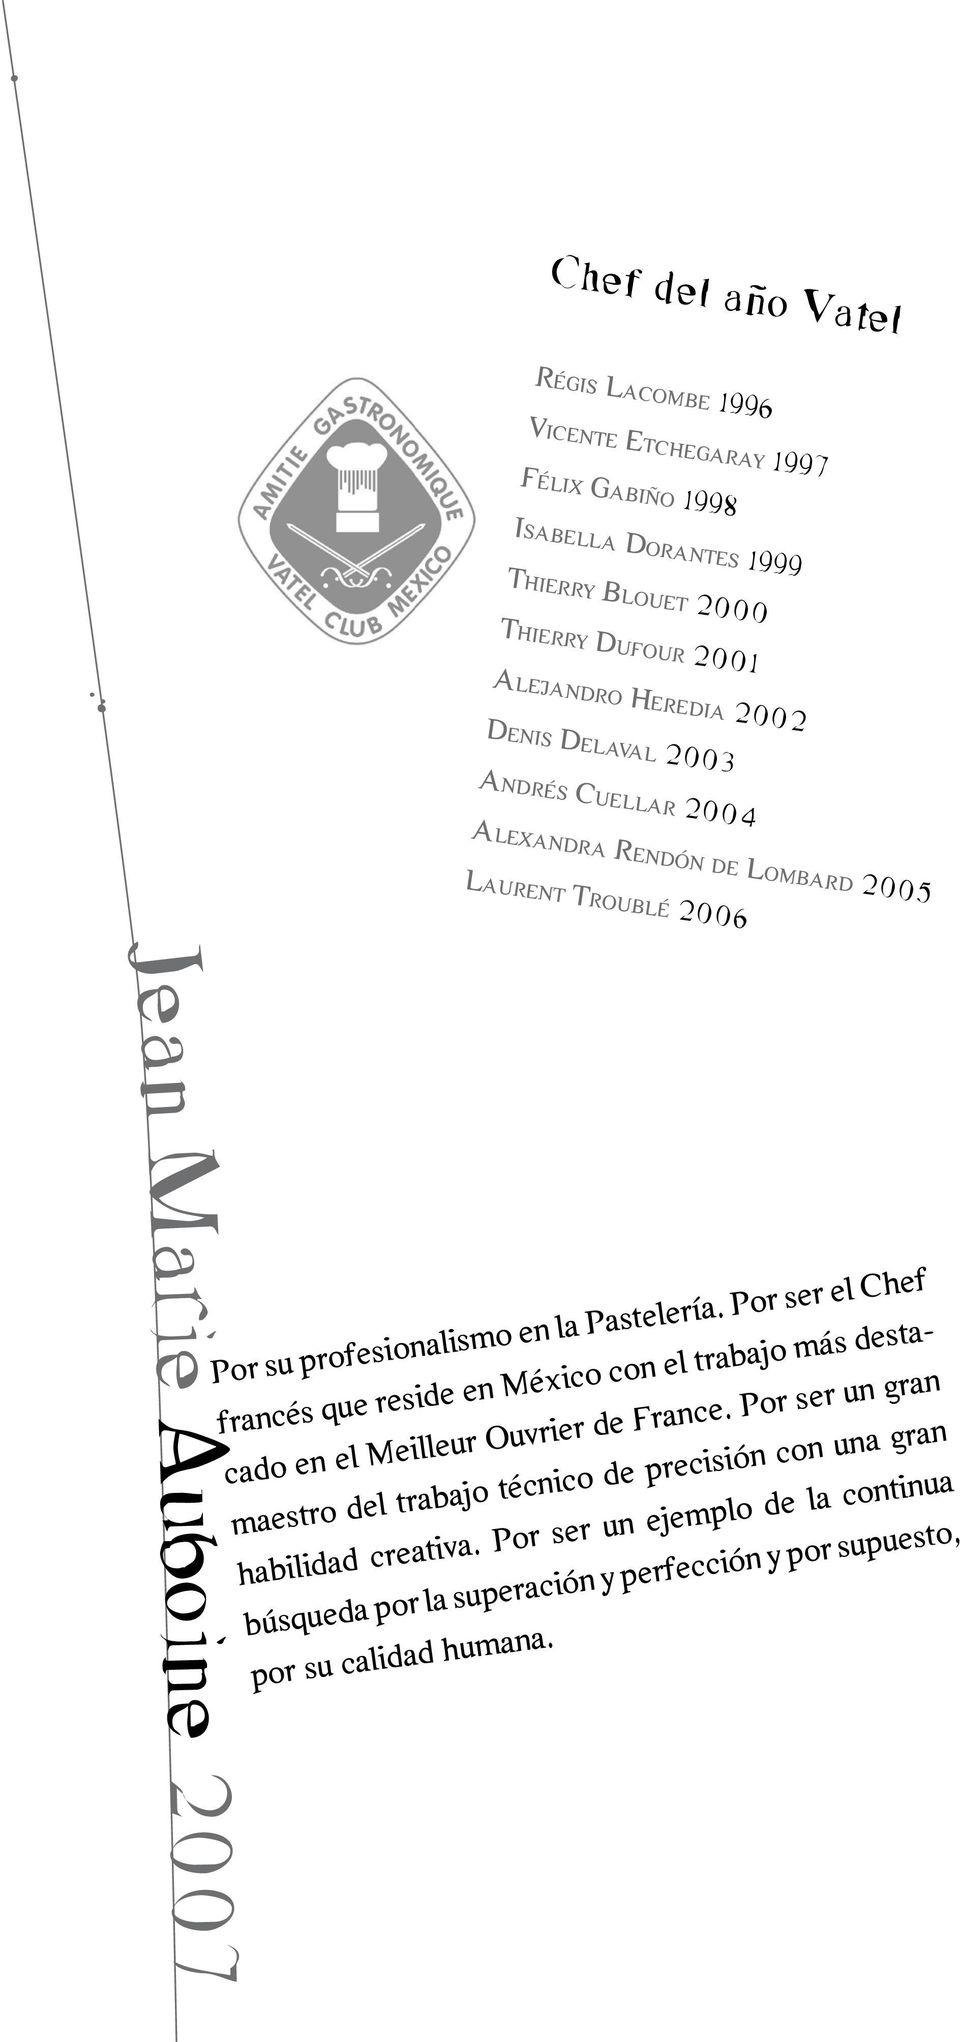 Pastelería. Por ser el Chef francés que reside en México con el trabajo más destacado en el Meilleur Ouvrier de France.